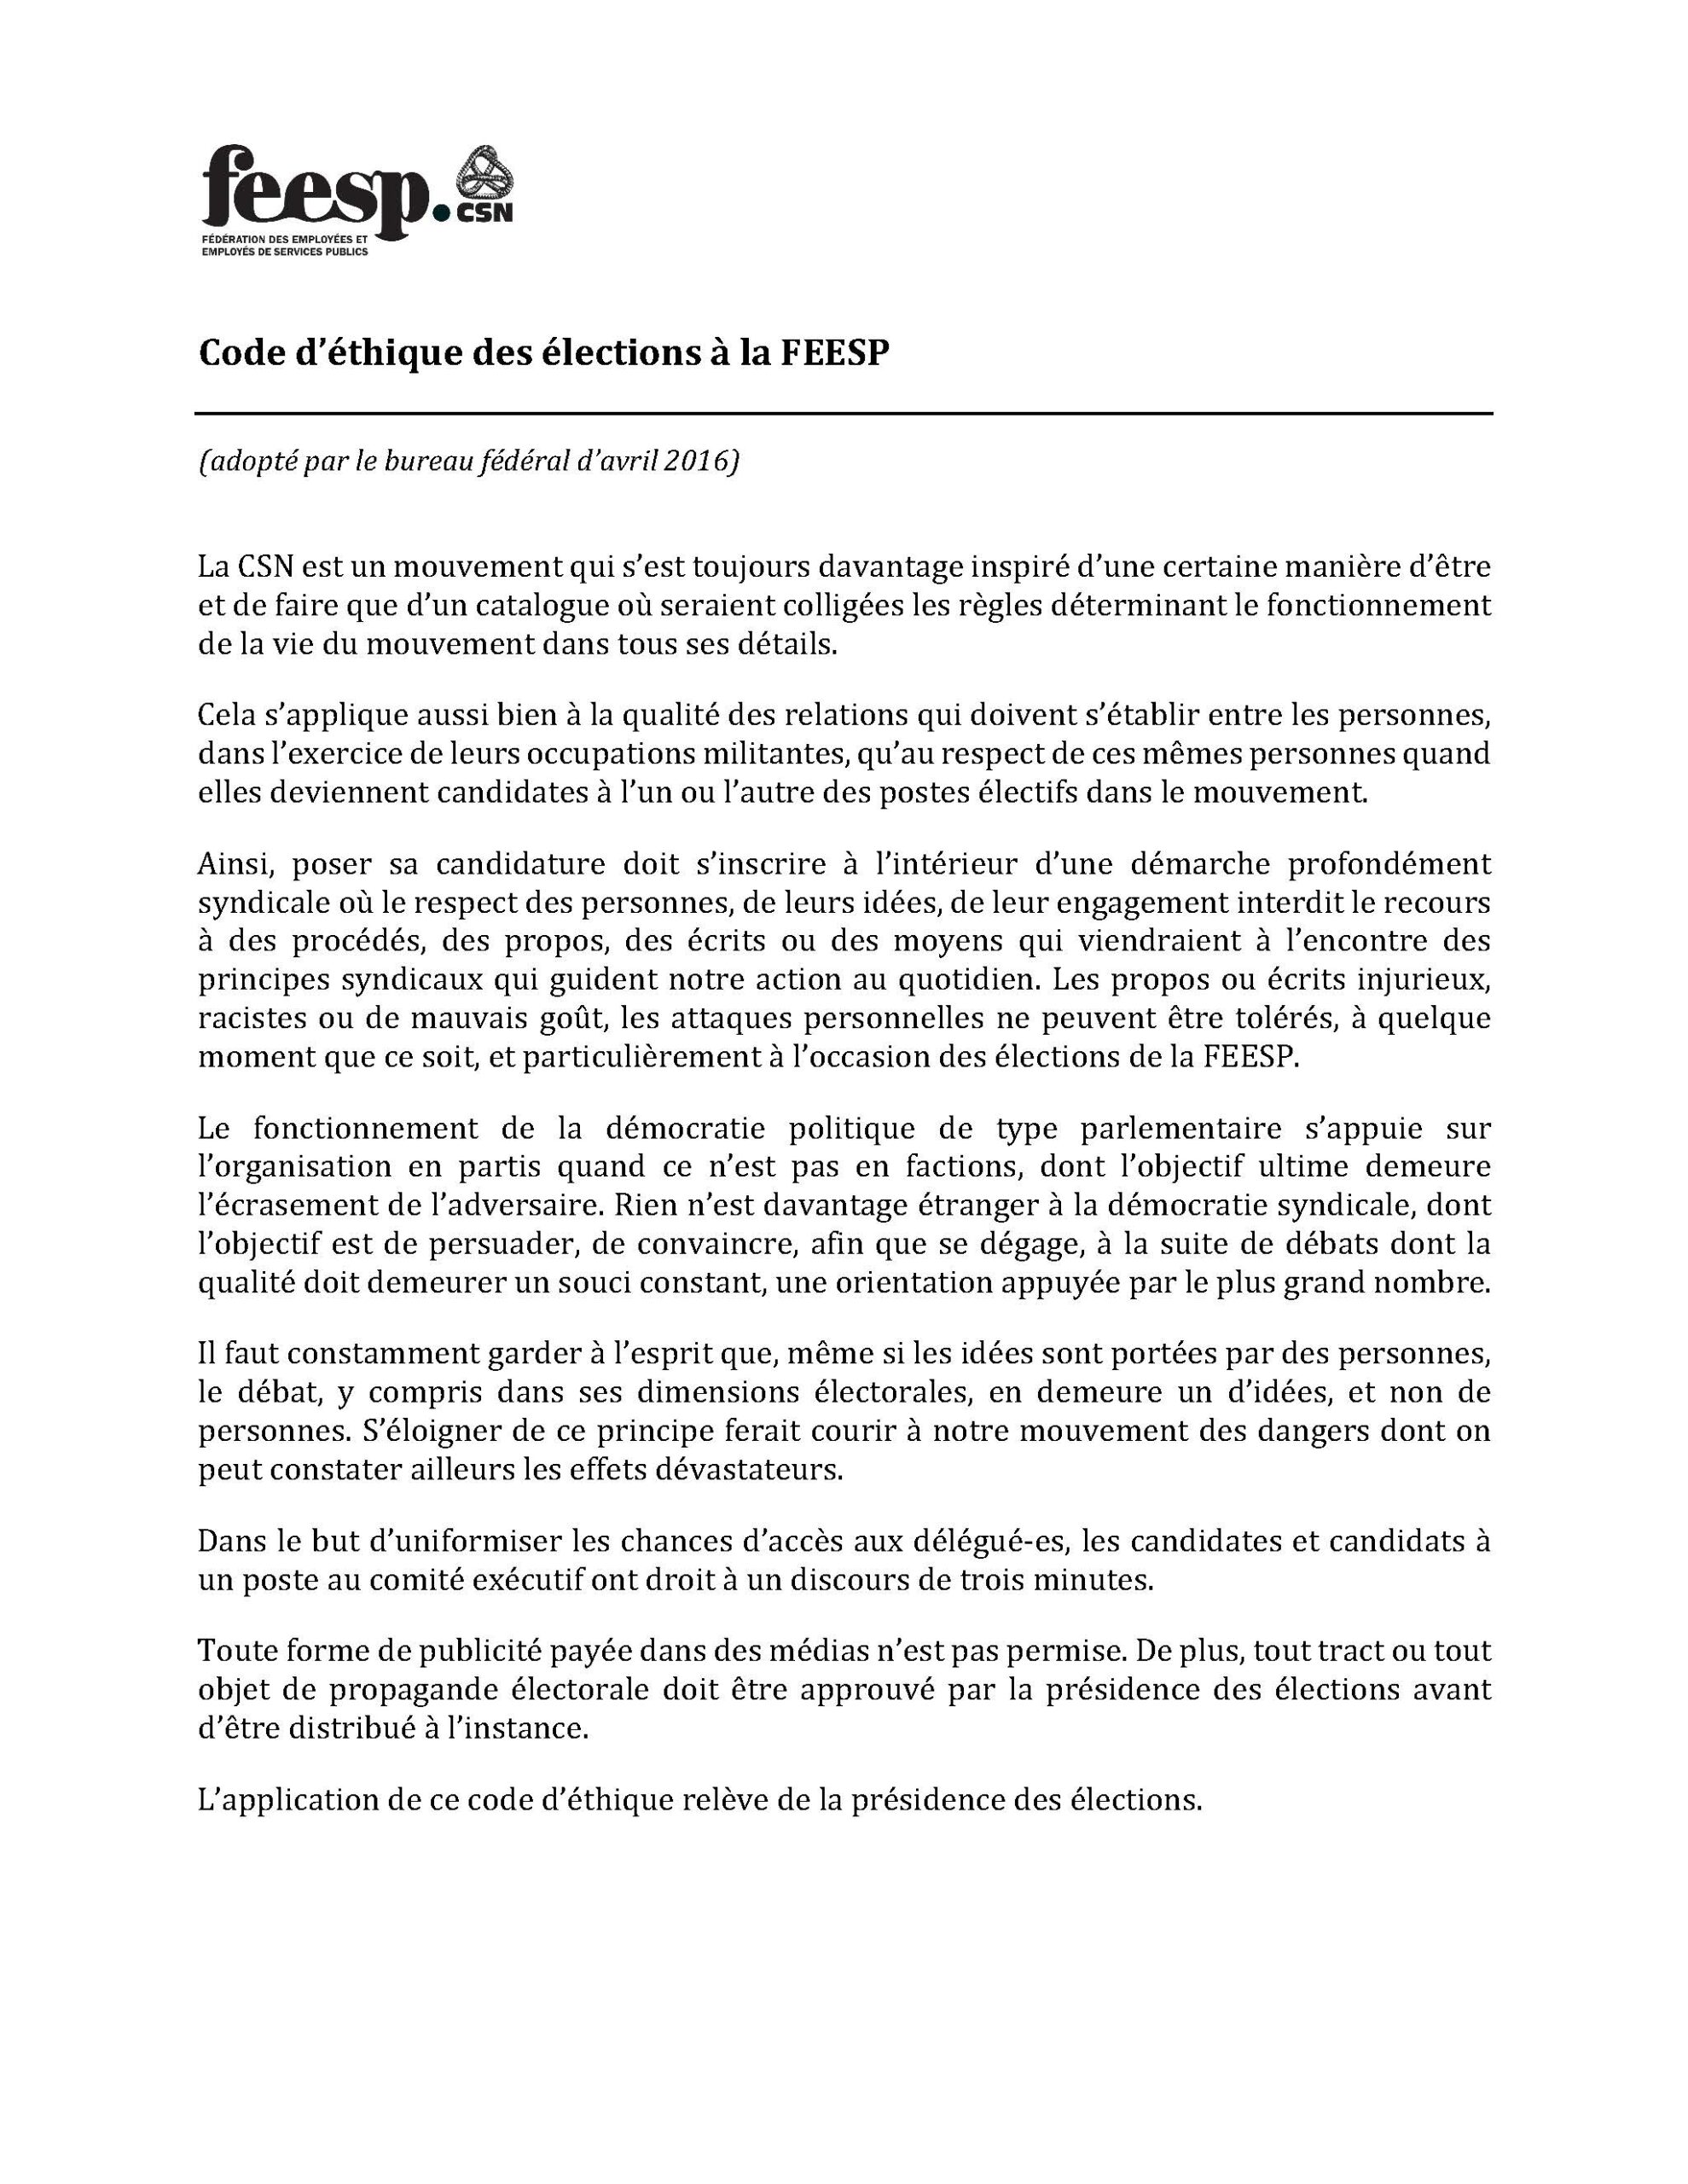 Code d’éthique pour les élections FEESP-CSN